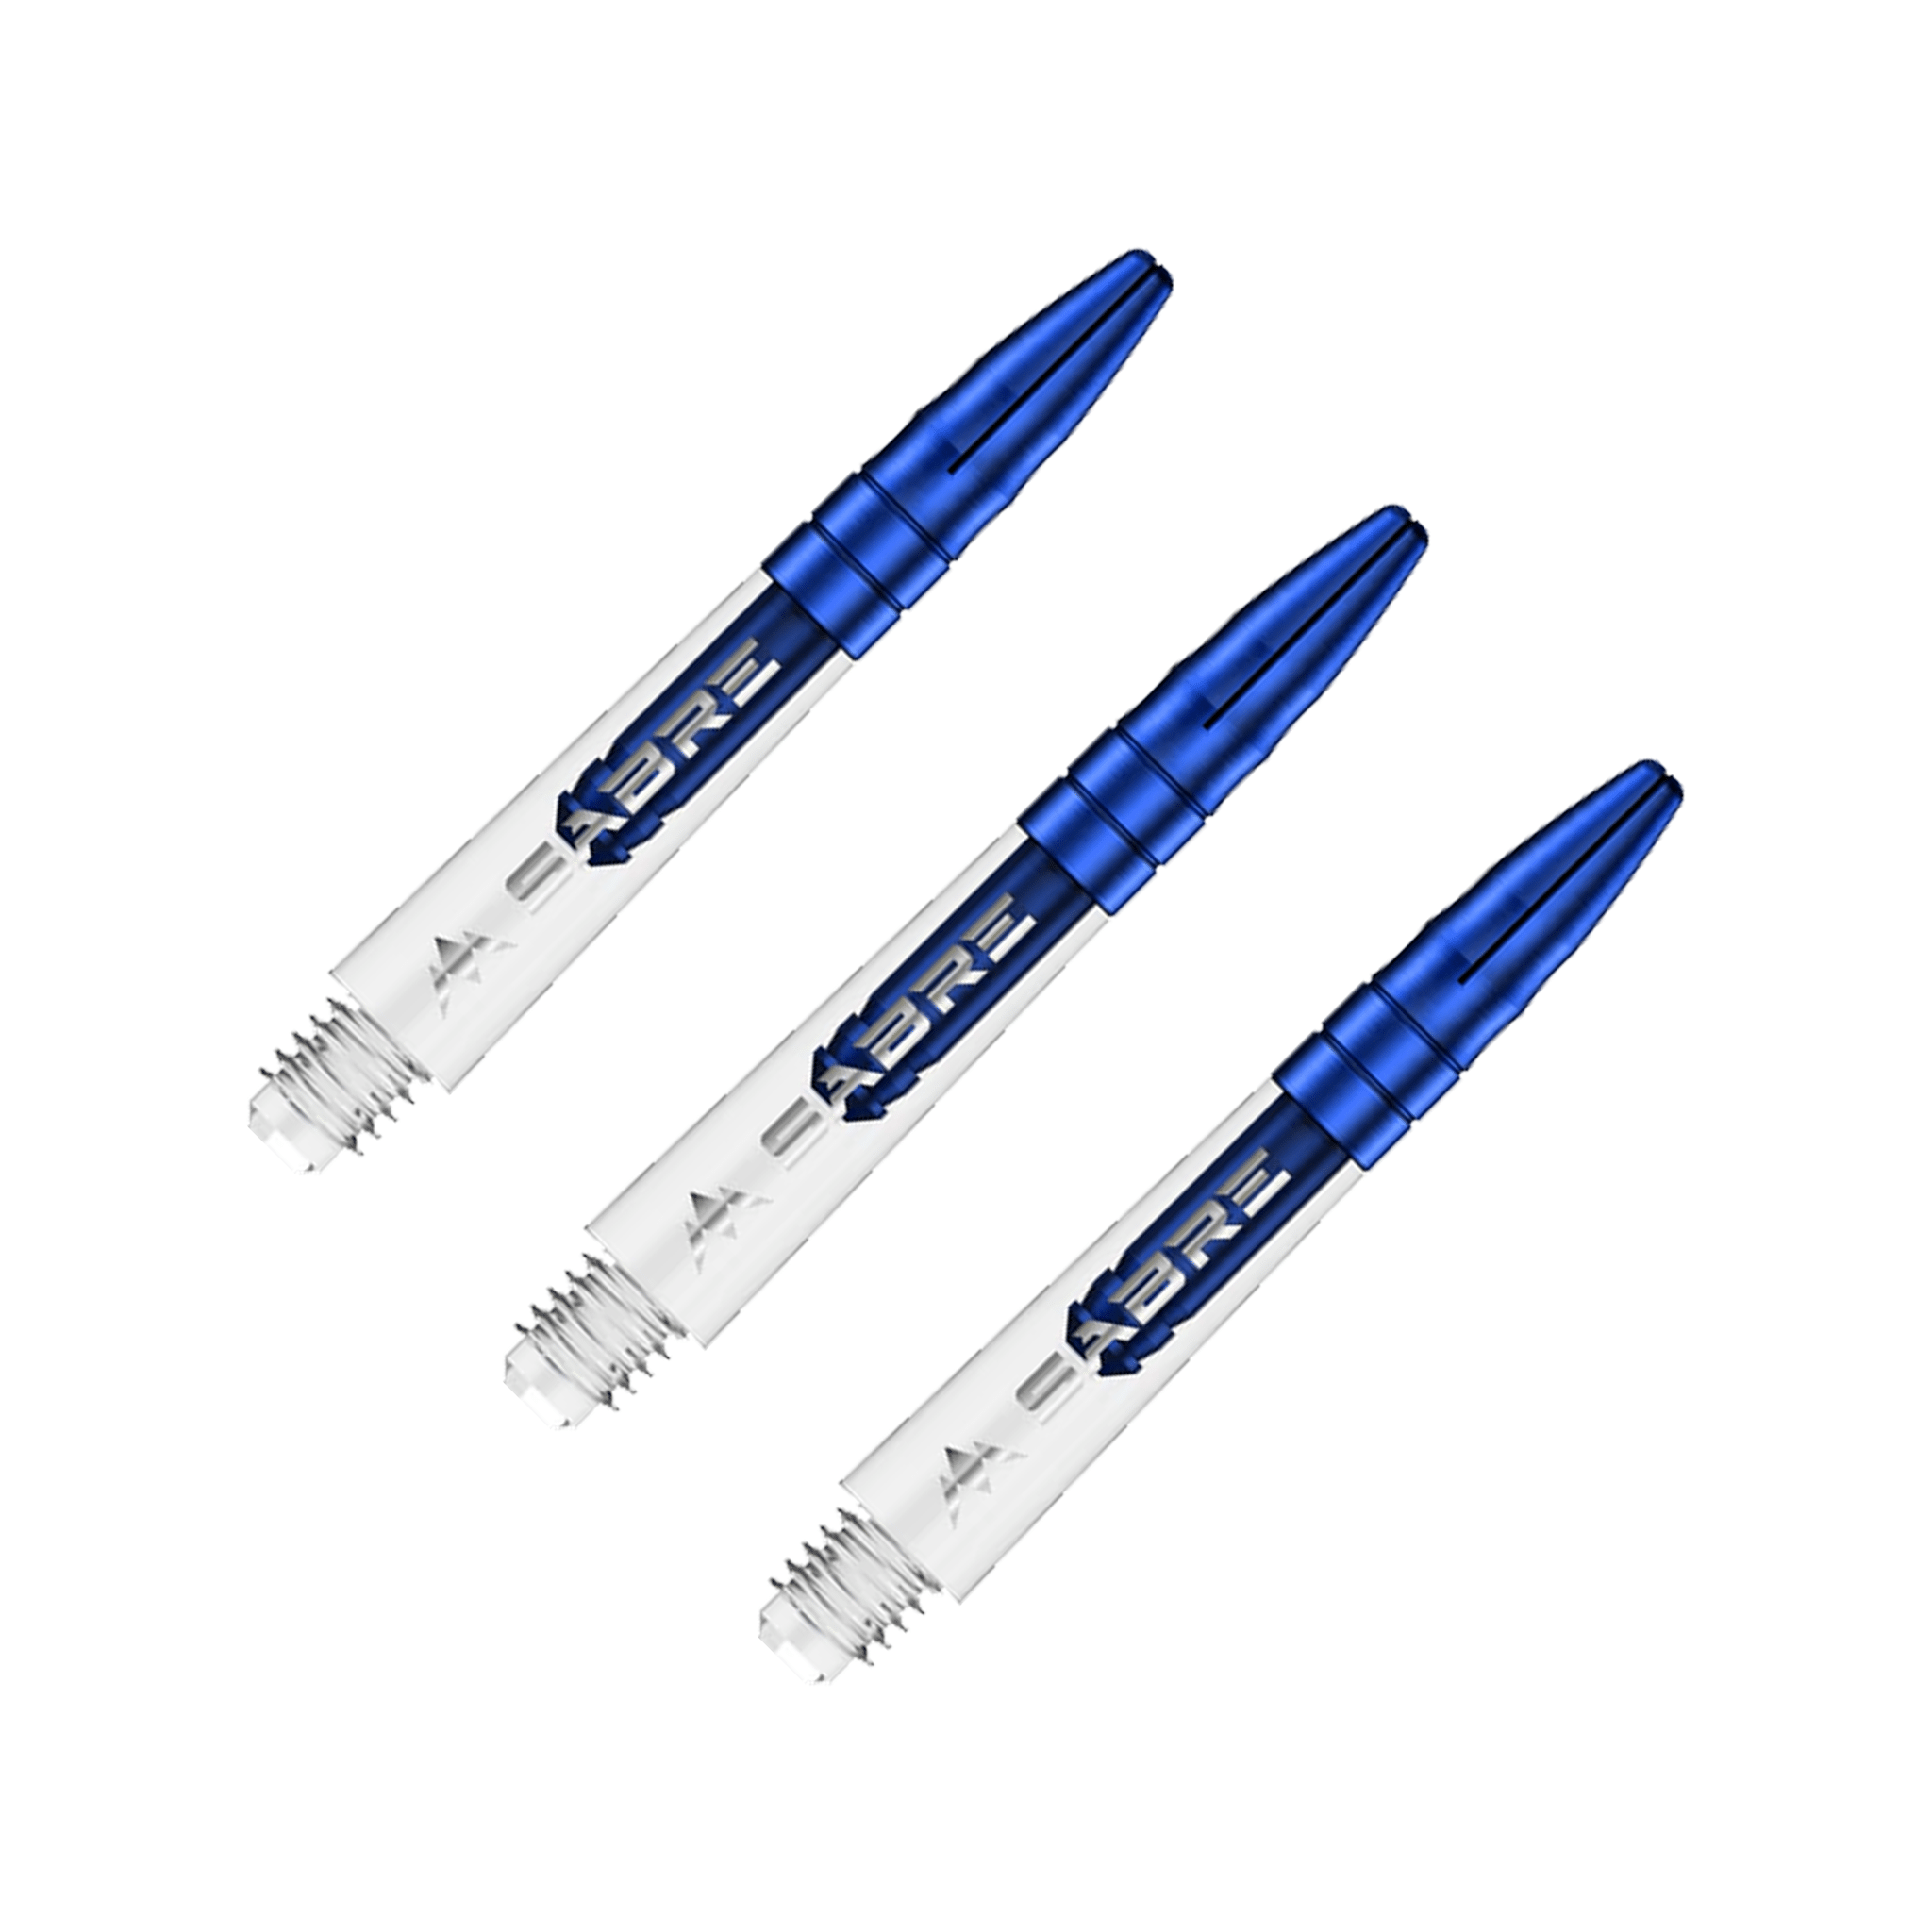 Mission Sabre - Polycarbonate Dart Shafts Short (36mm) / Clear & Blue Shafts